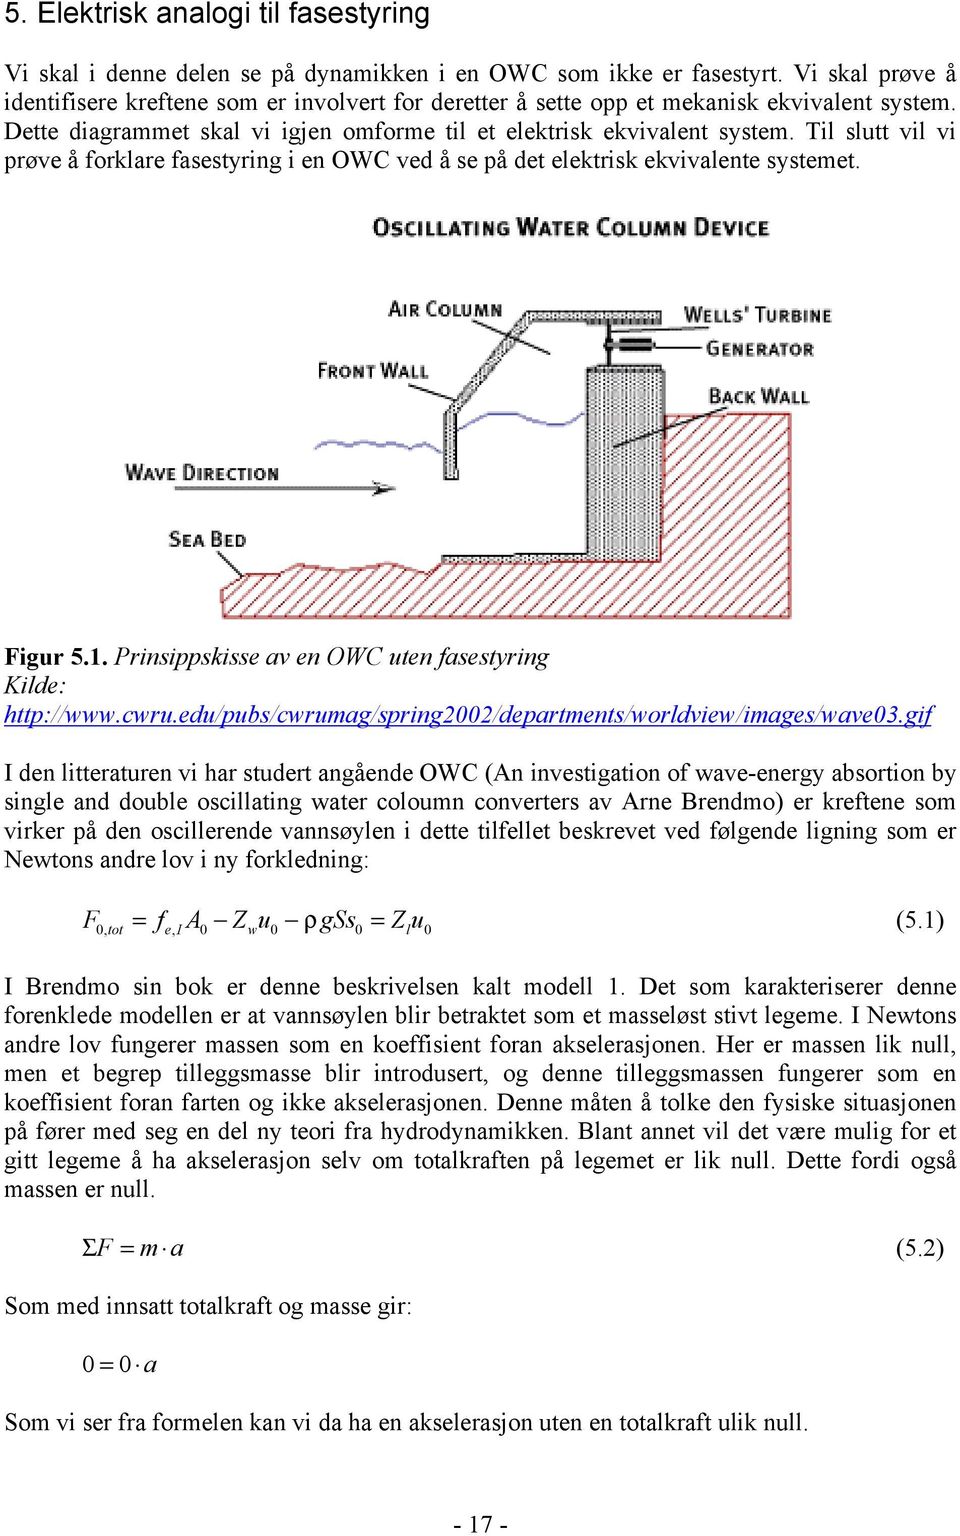 Til slutt vil vi prøve å forklare fasestyring i en OWC ved å se på det elektrisk ekvivalente systemet. Figur 5.1. Prinsippskisse av en OWC uten fasestyring Kilde: http://www.cwru.